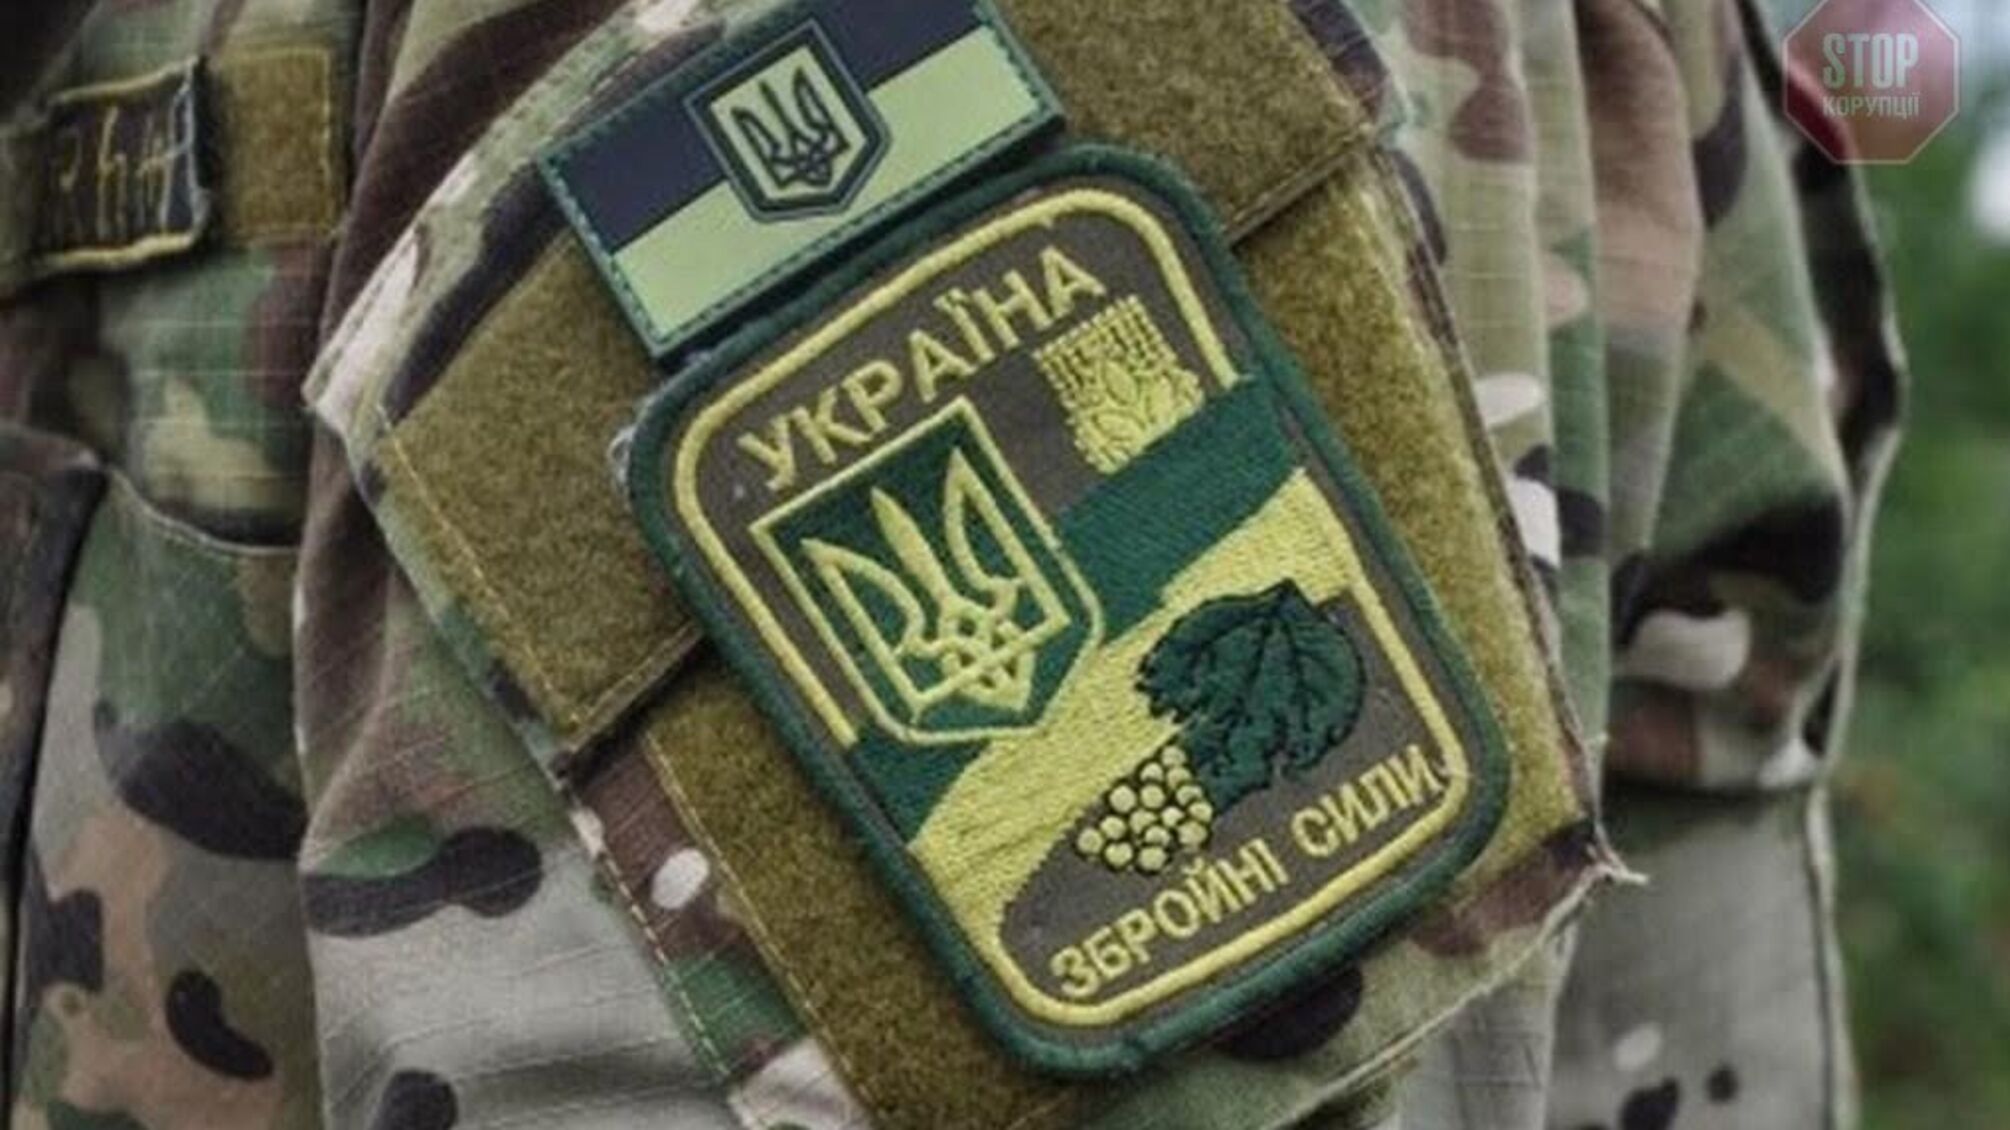 У Міноборони прокоментували інформацію про картопляне пюре з Росії для українських військових